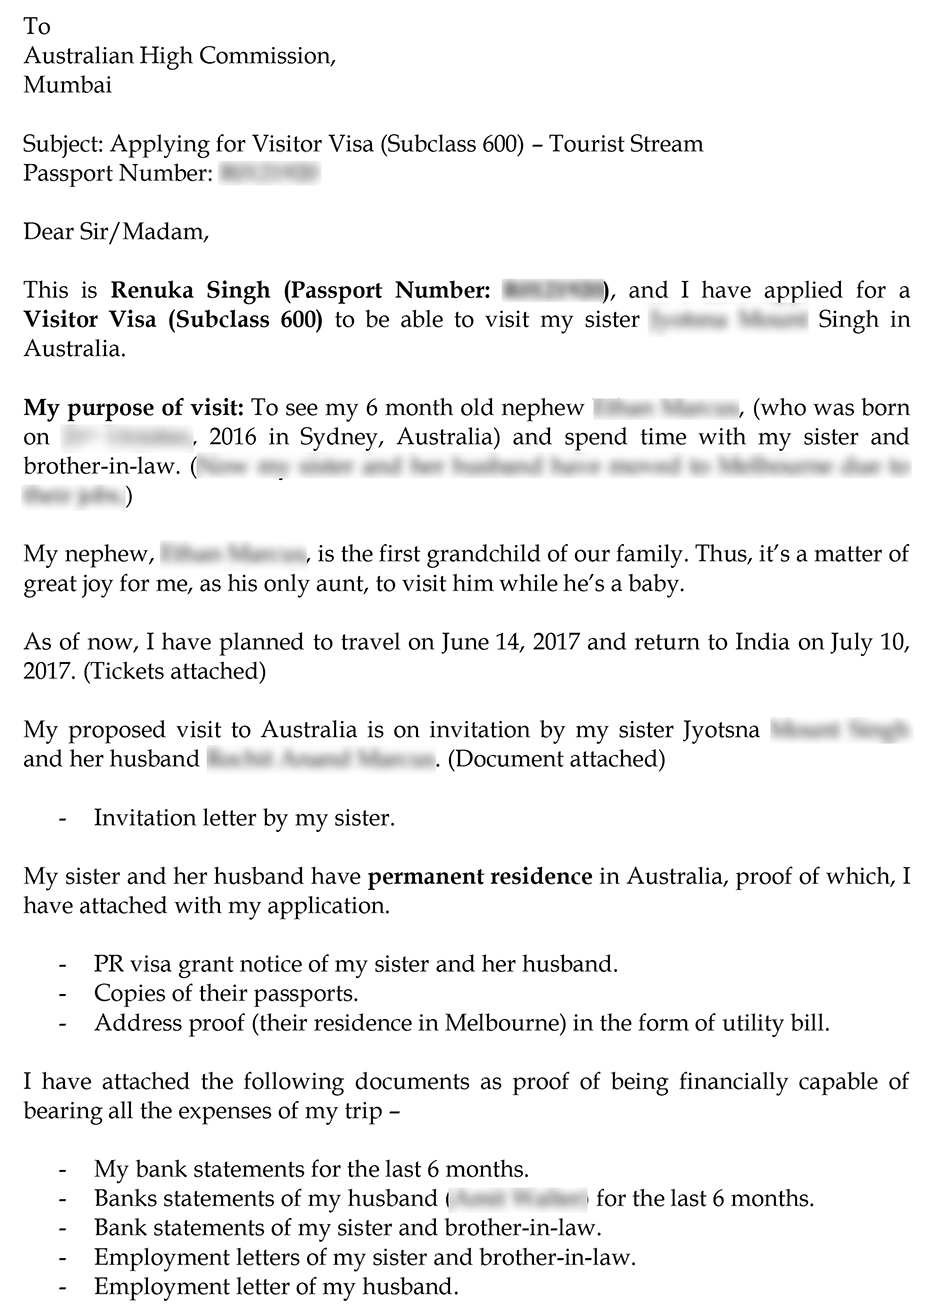 tourist visa cover letter for australia